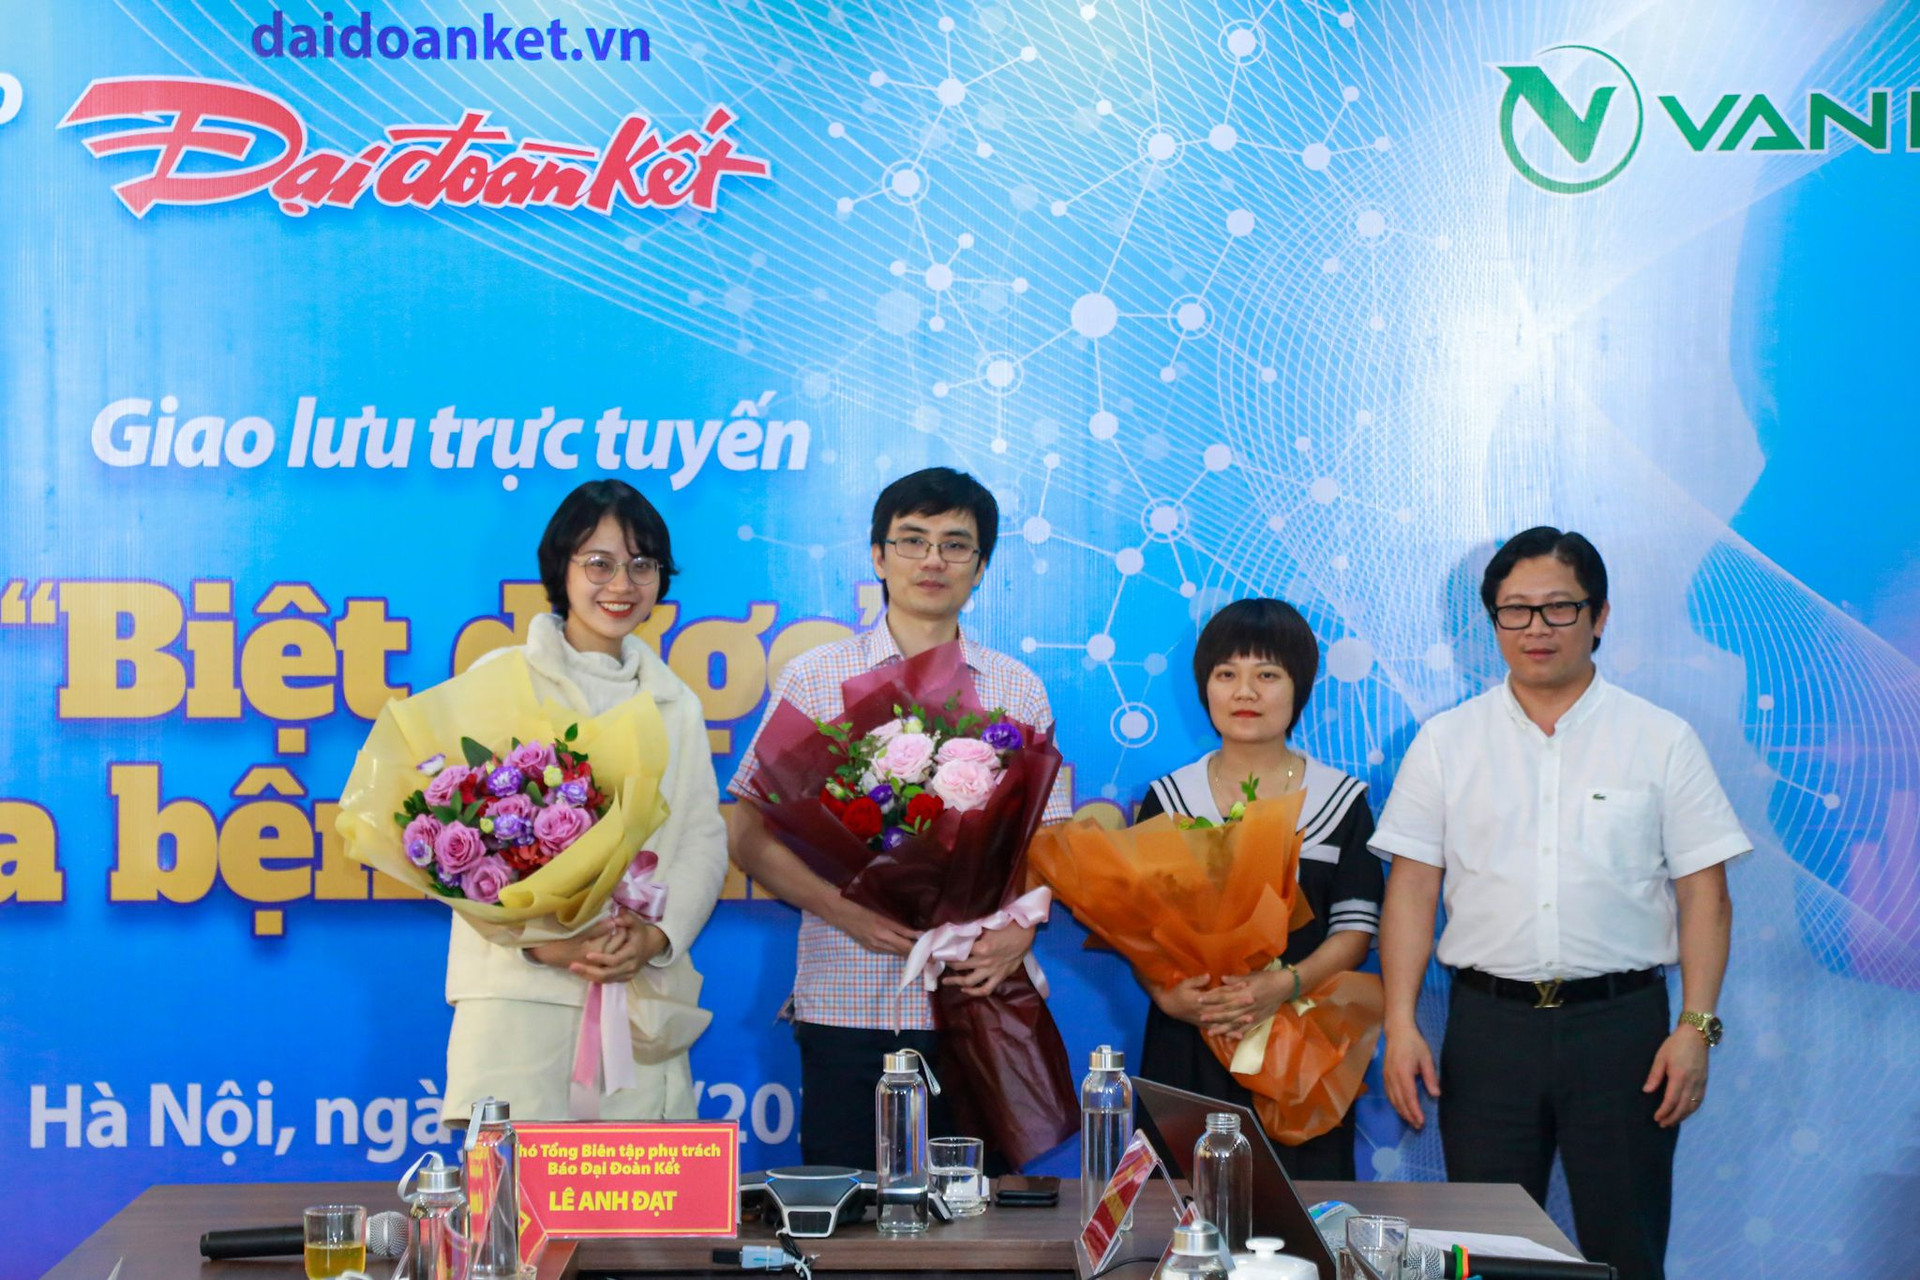 Nhà báo Lê Anh Đạt tặng hoa cảm ơn các khách mời đã đến tham gia buổi Giao lưu trực tuyến 